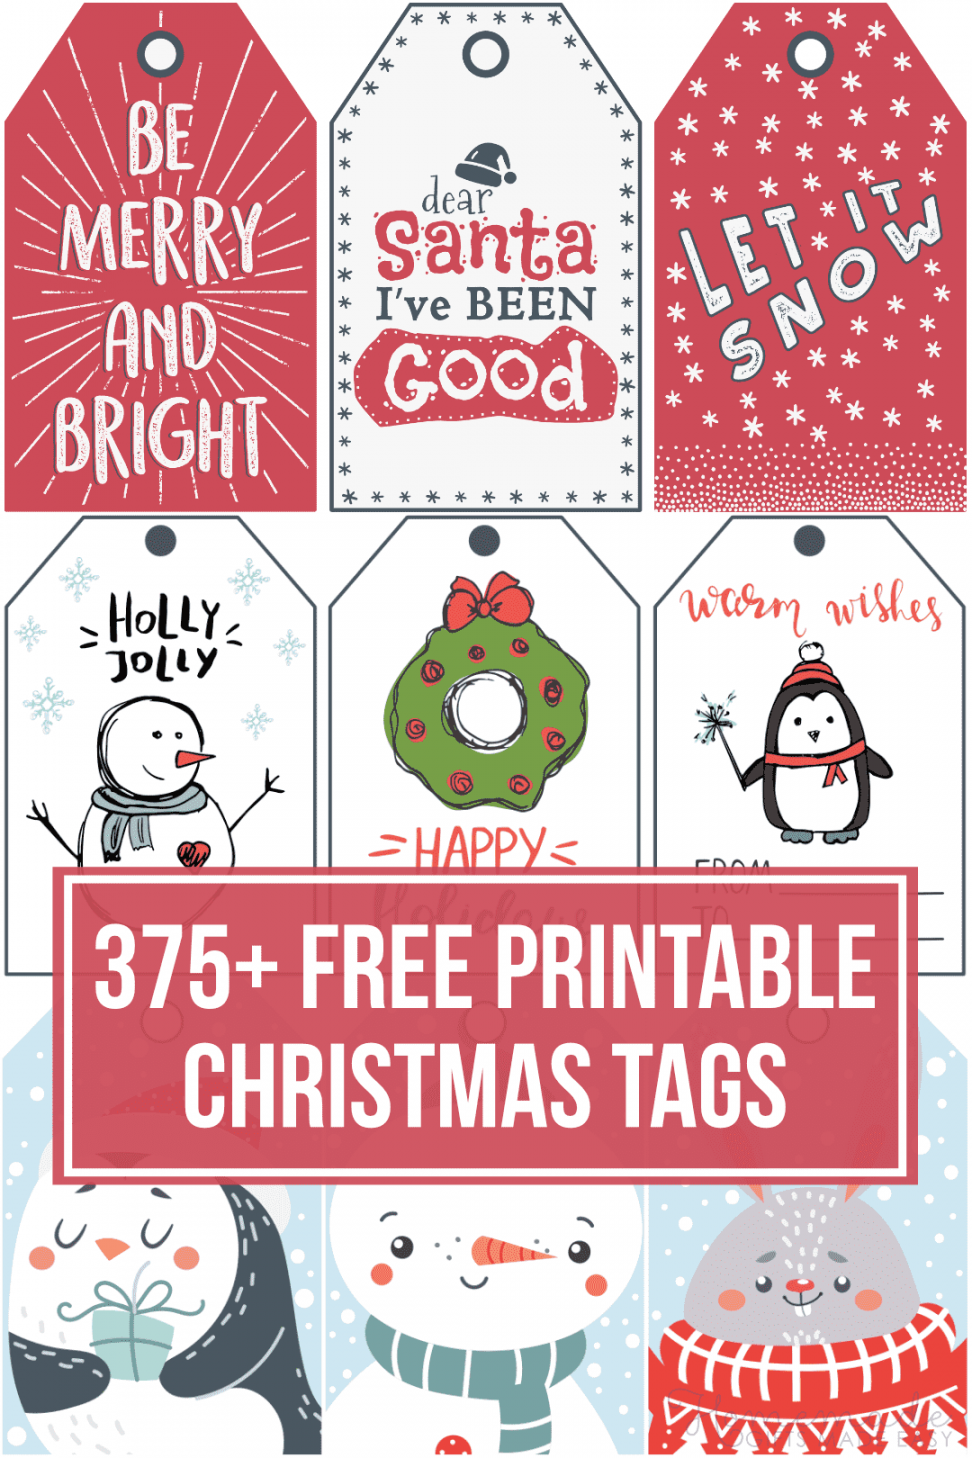 Christmas Tags Printable Free - Printable - + Free Printable Christmas Tags for your Holiday Gifts